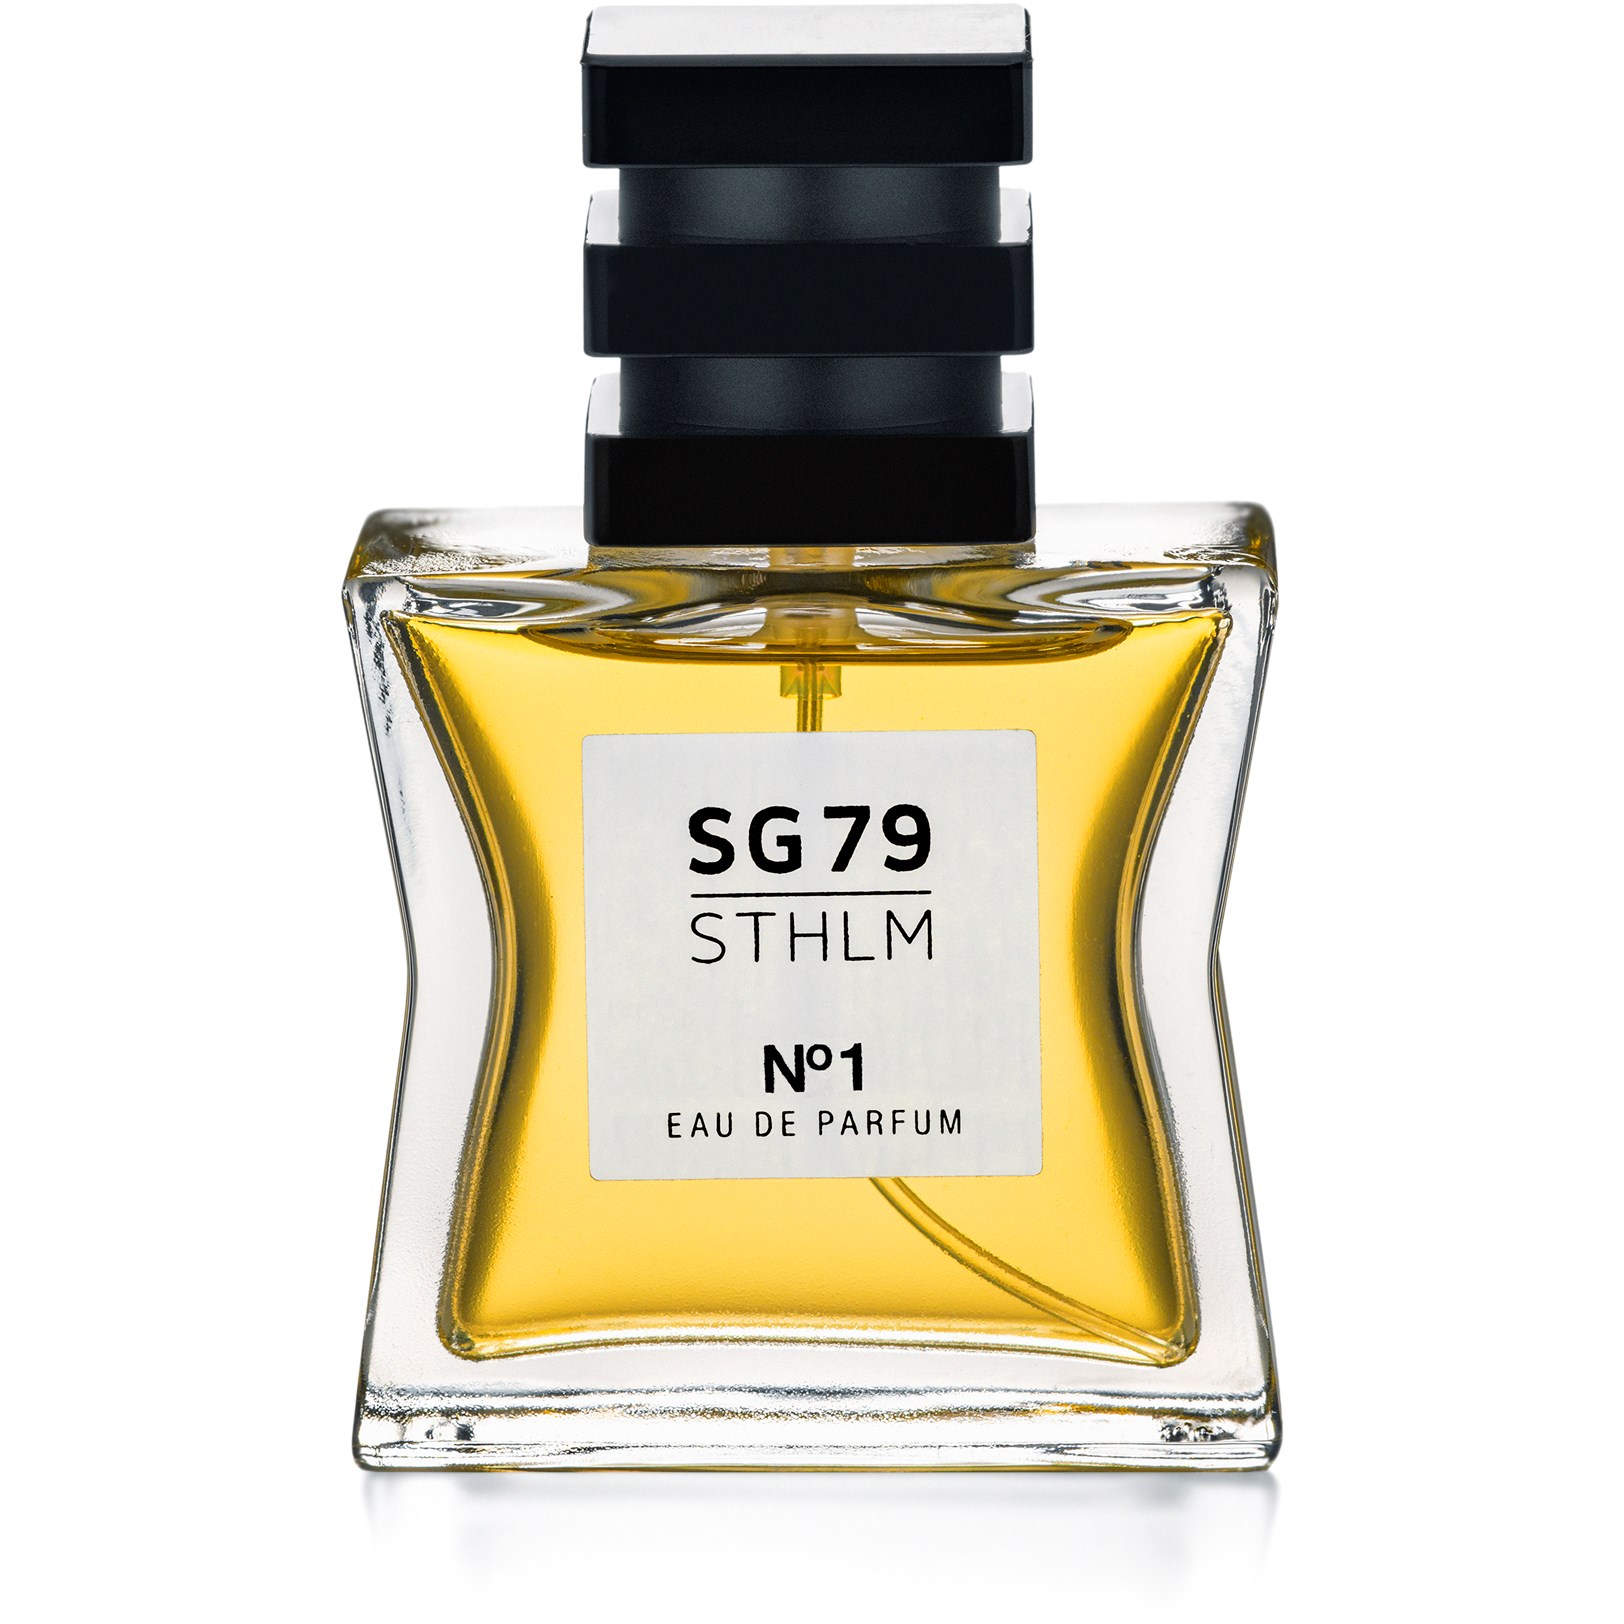 SG79 STHLM No1 Eau De Parfum 30 ml